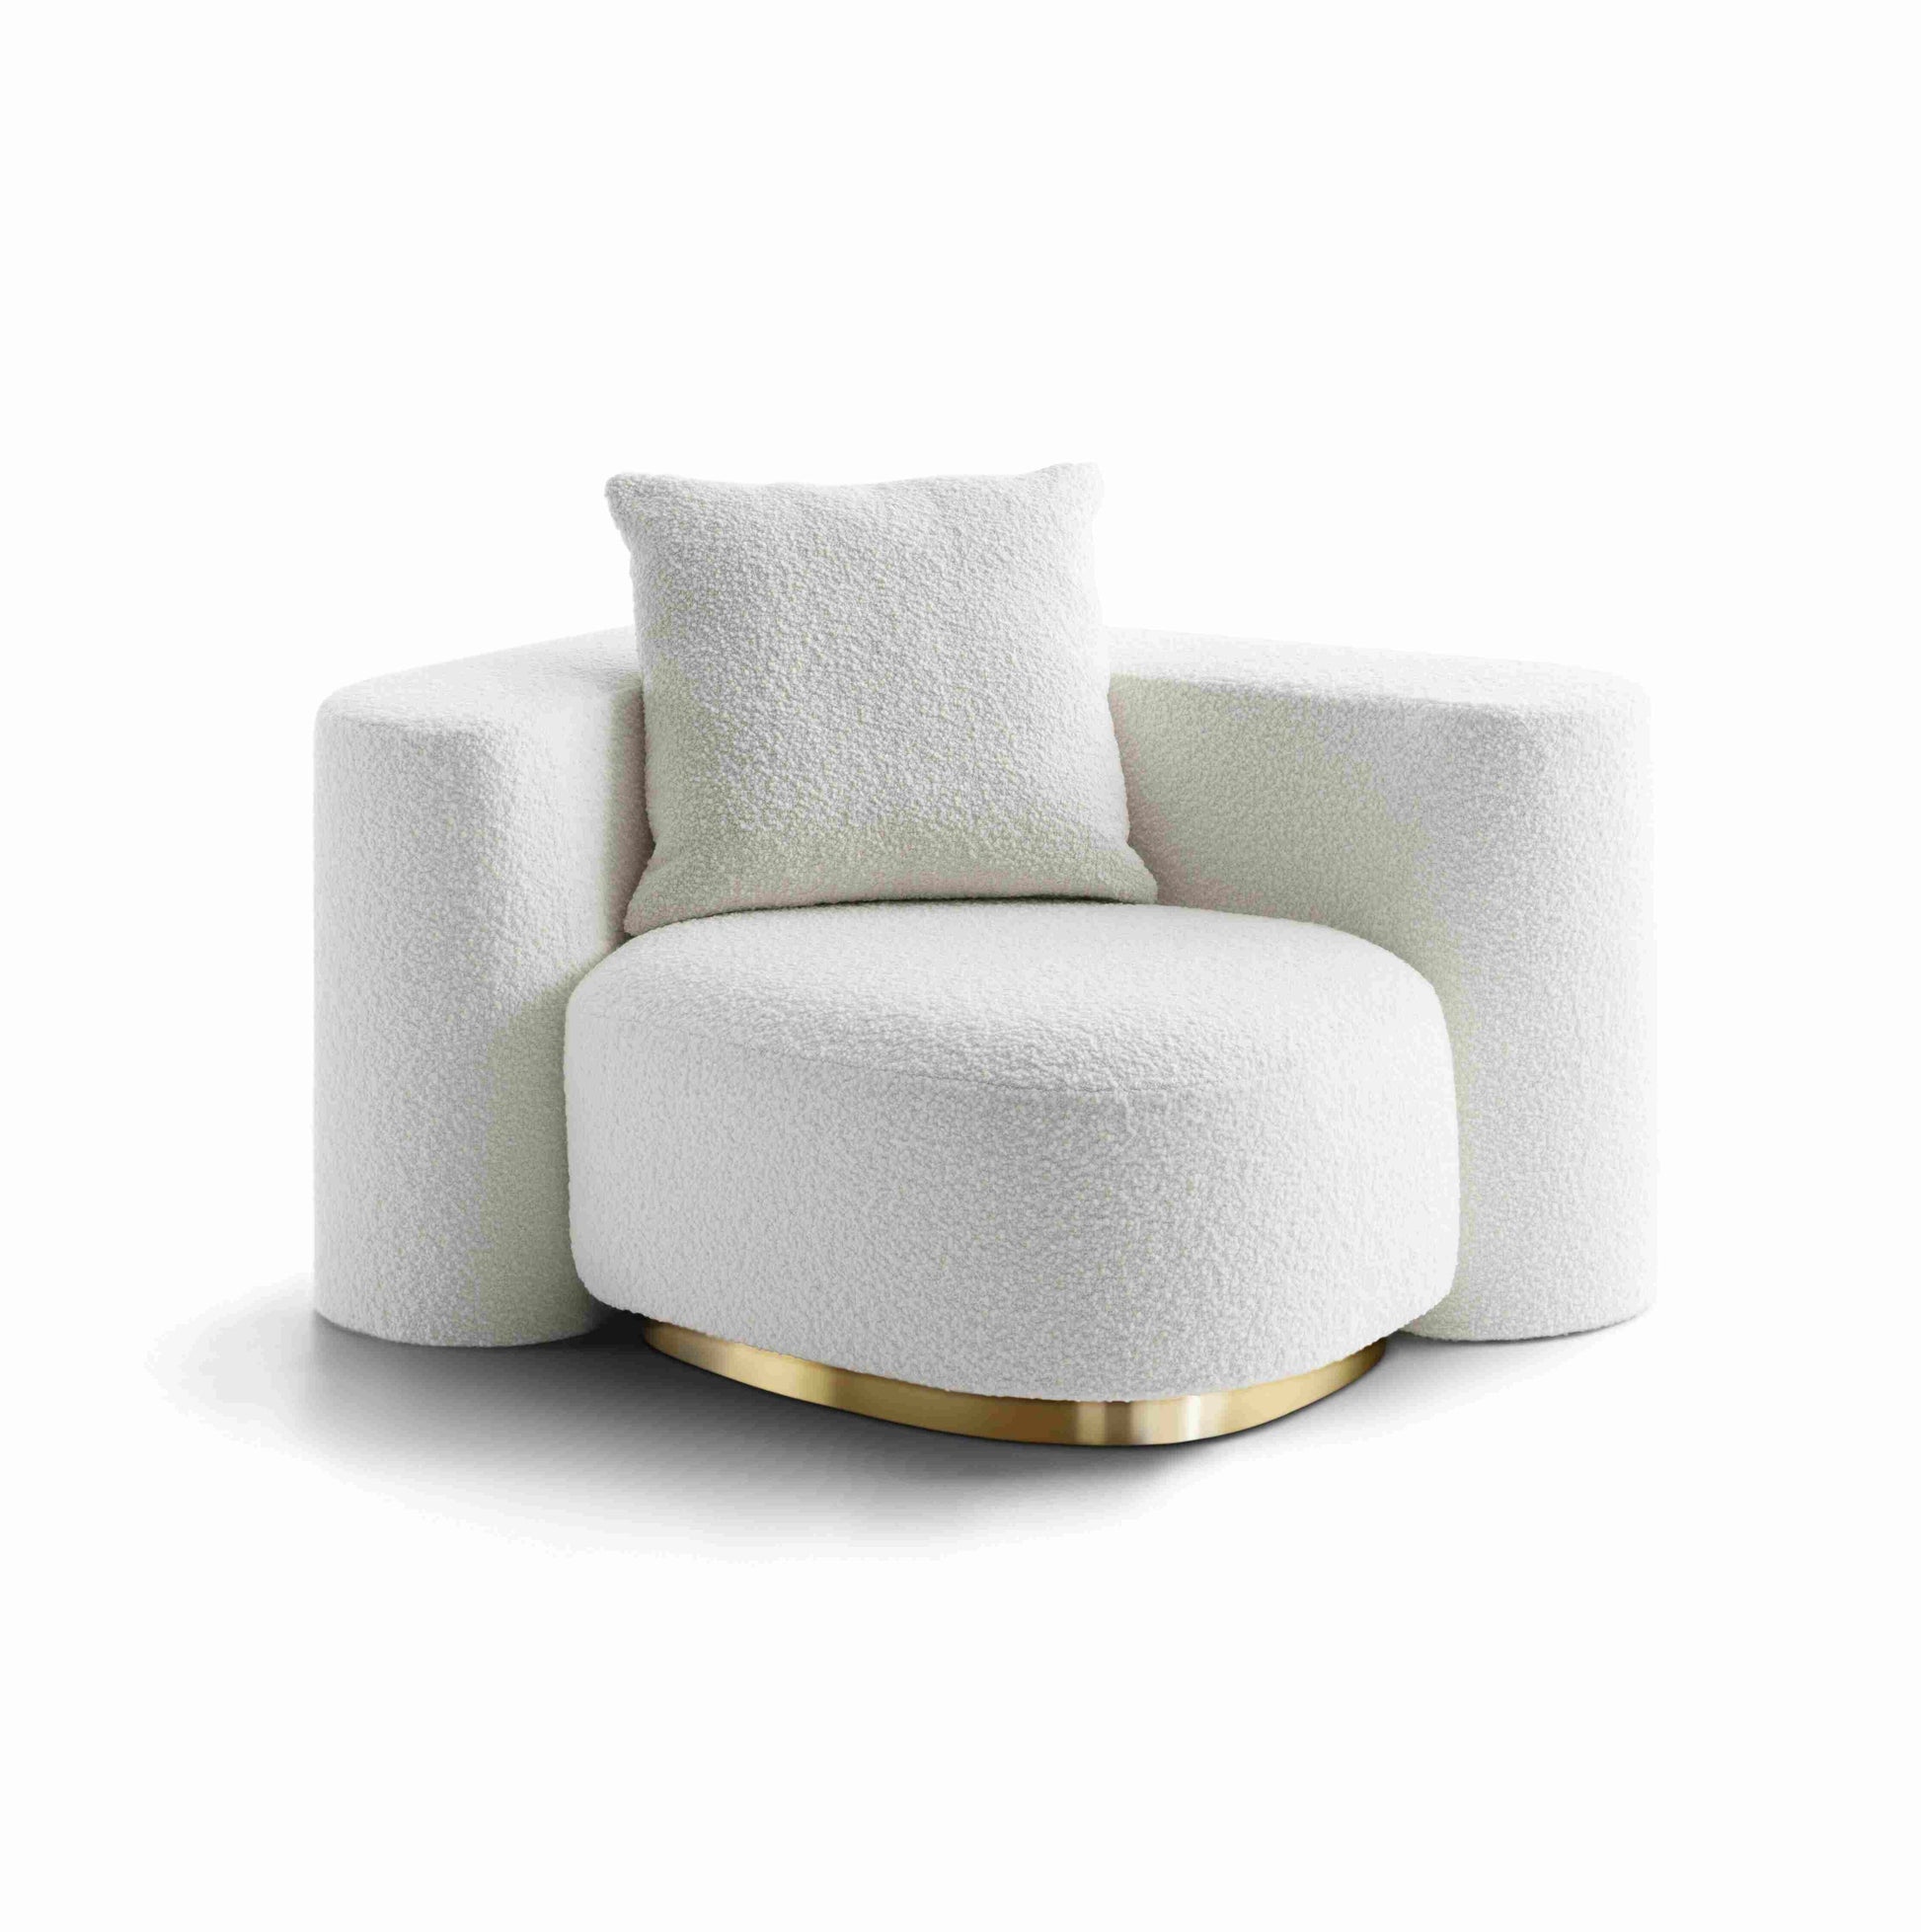 Dolce&Gabbana Casa - Moon island armchair in white